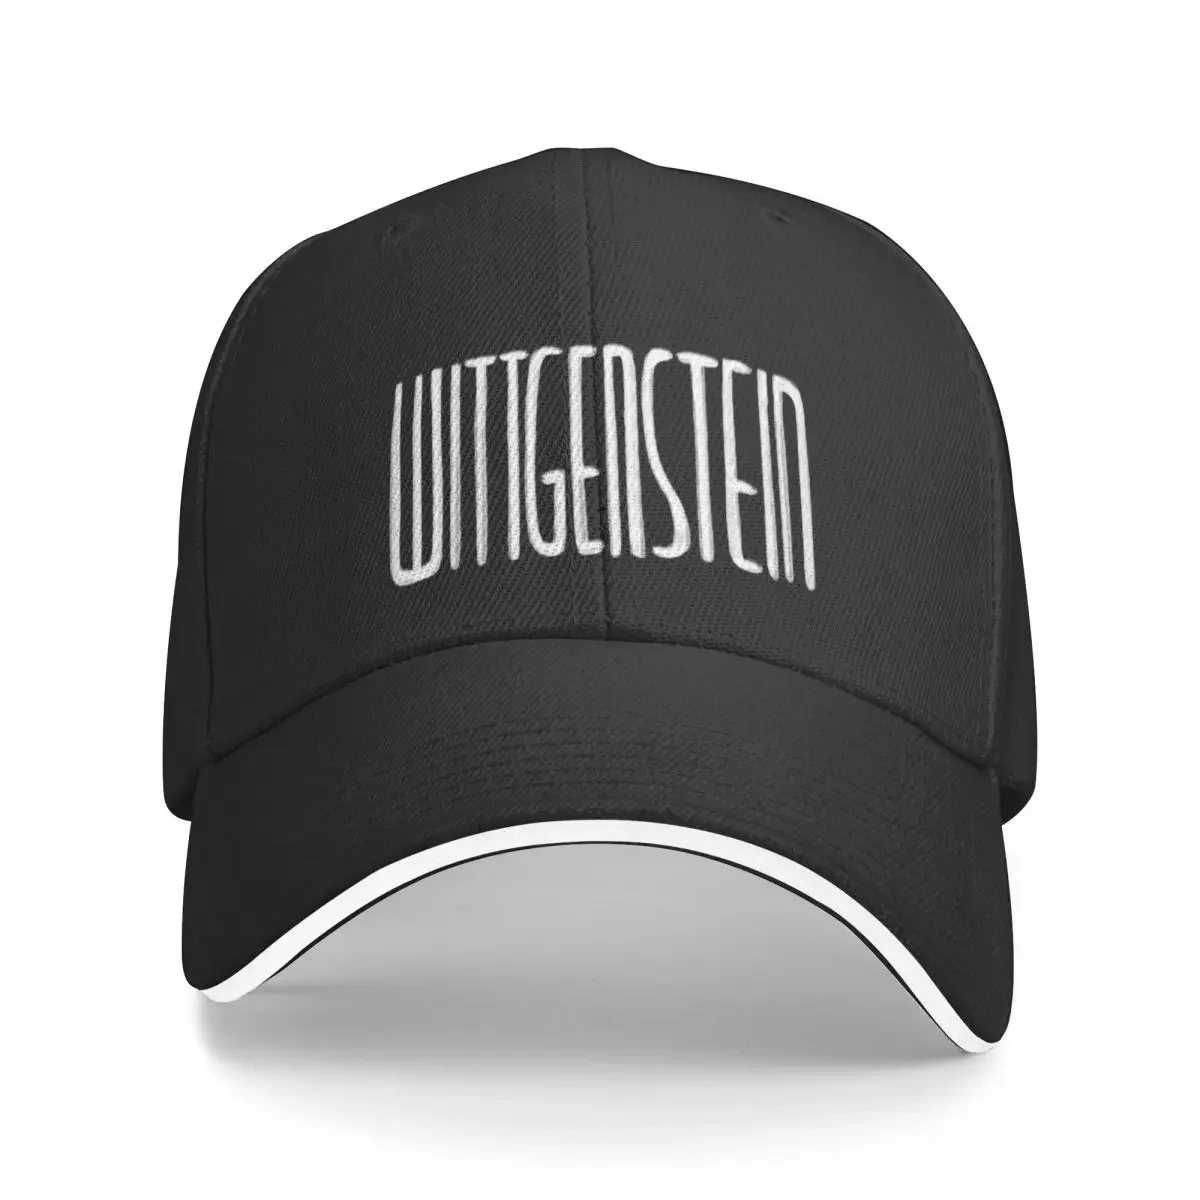 

Philosophy Wittgenstein, Philosopher Ludwig Wittgenstein Baseball Cap foam party Hat hiking hat Baseball For Men Women's